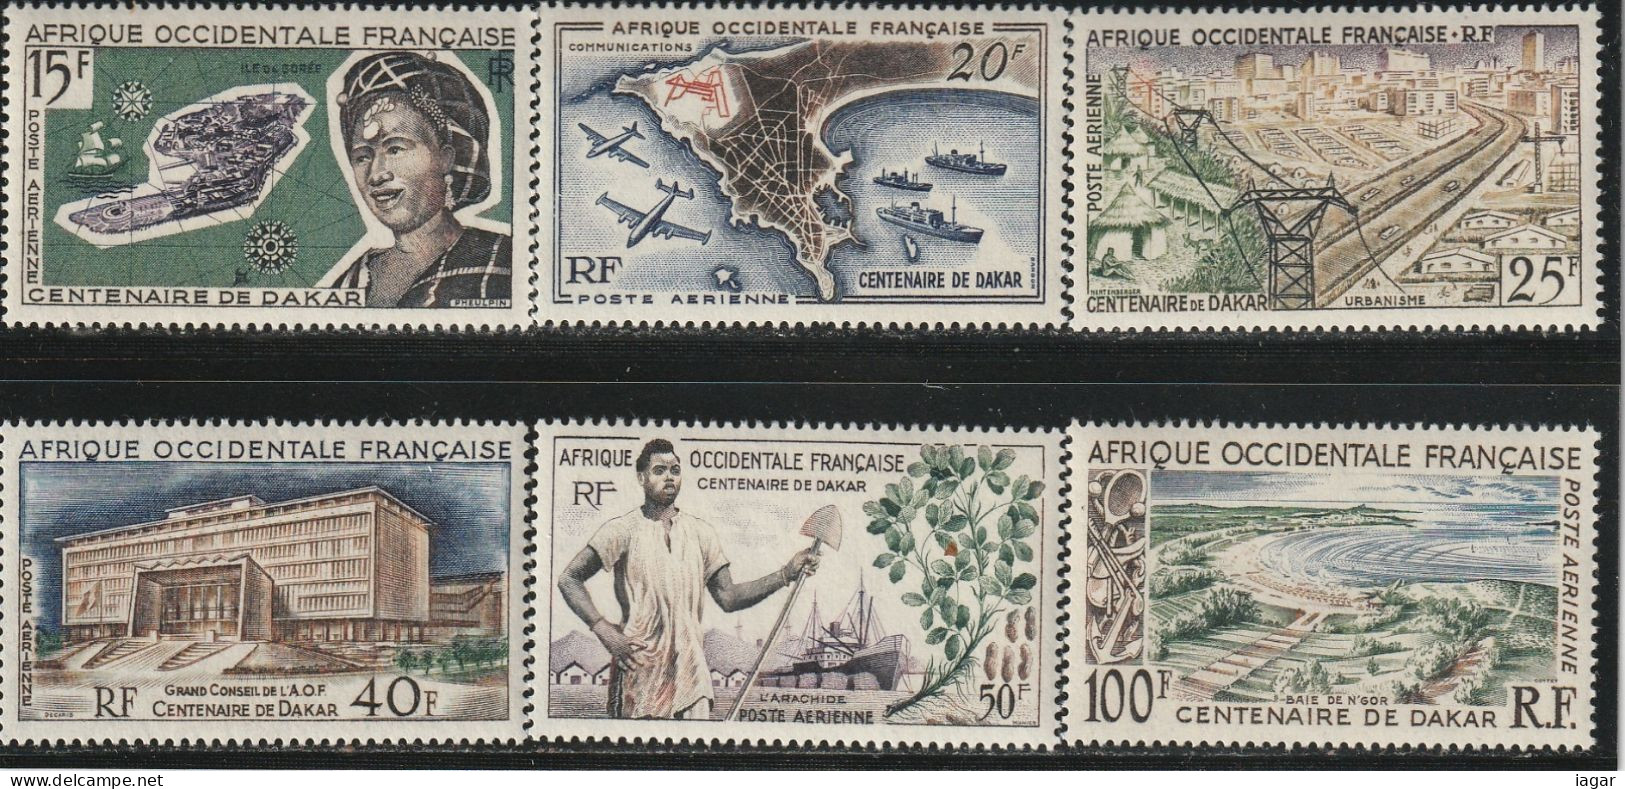 AFRIQUE OCCIDENTALE Française 1958  -  CENTENAIRE DE DAKAR, SUJETS DIVERS  6v - Africa (Other)